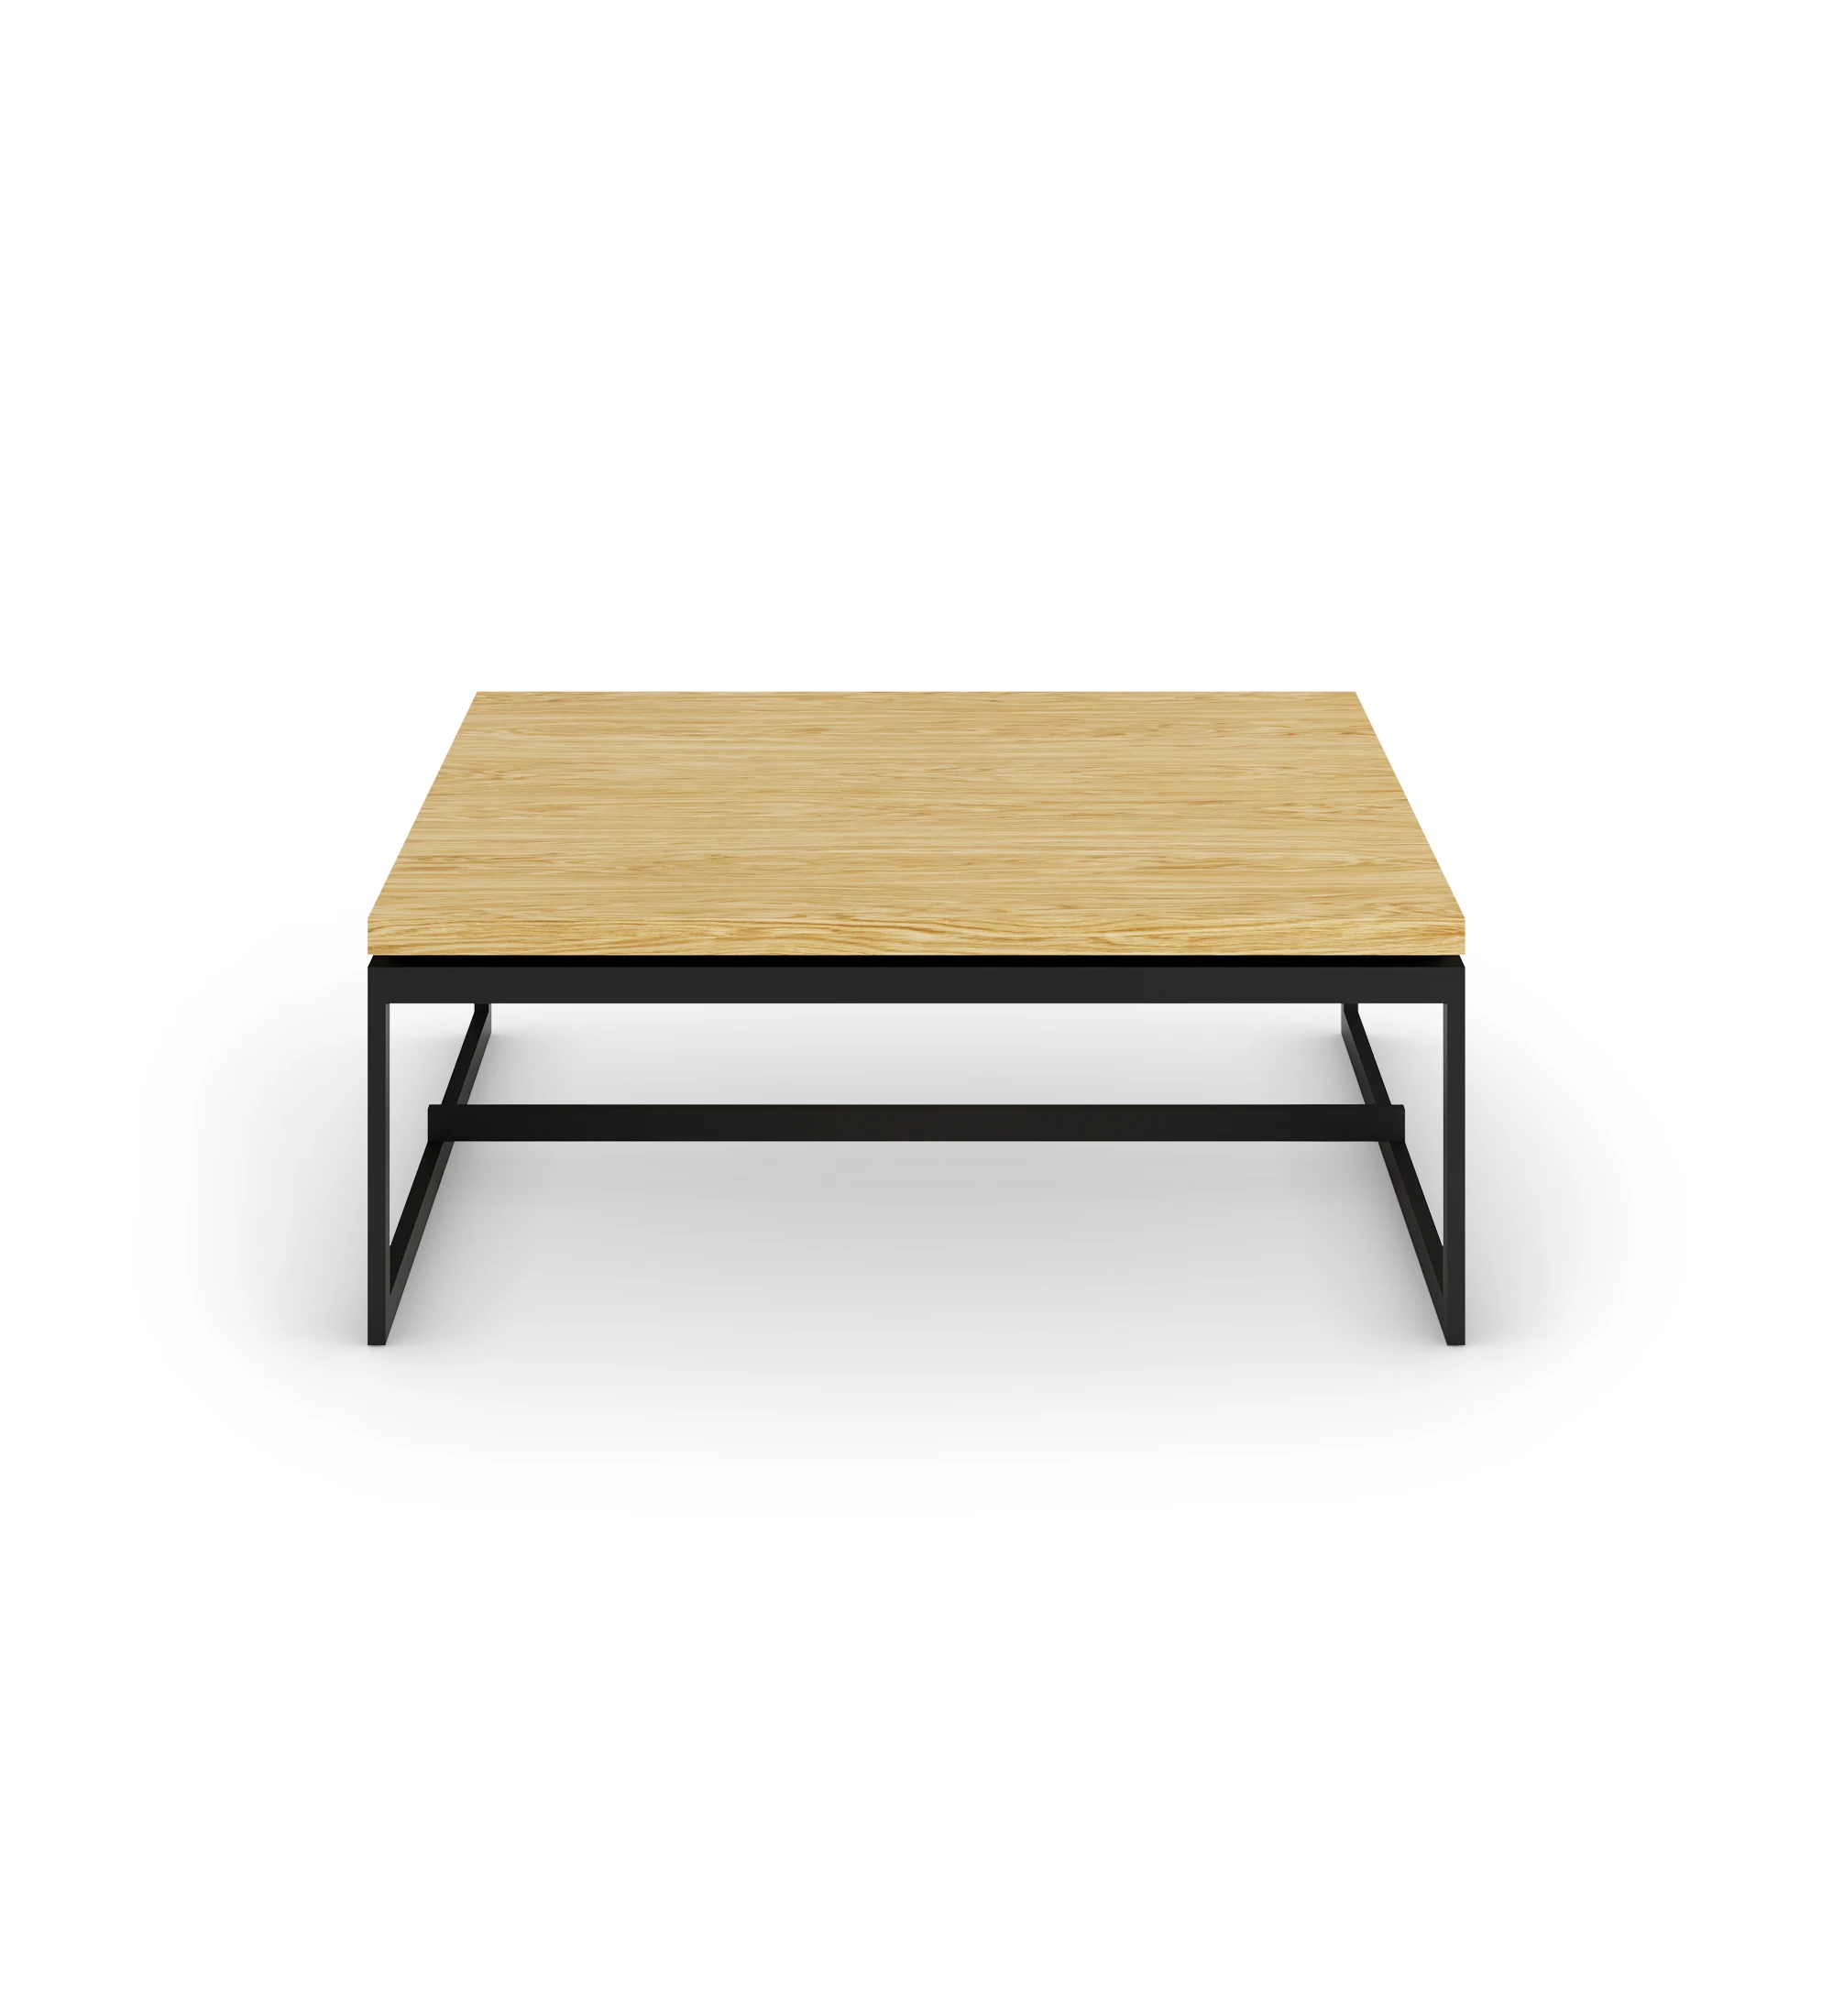 Table basse Chicago carrée, plateau en chêne naturel, pieds en métal laqué noir, 90 x 90 cm.